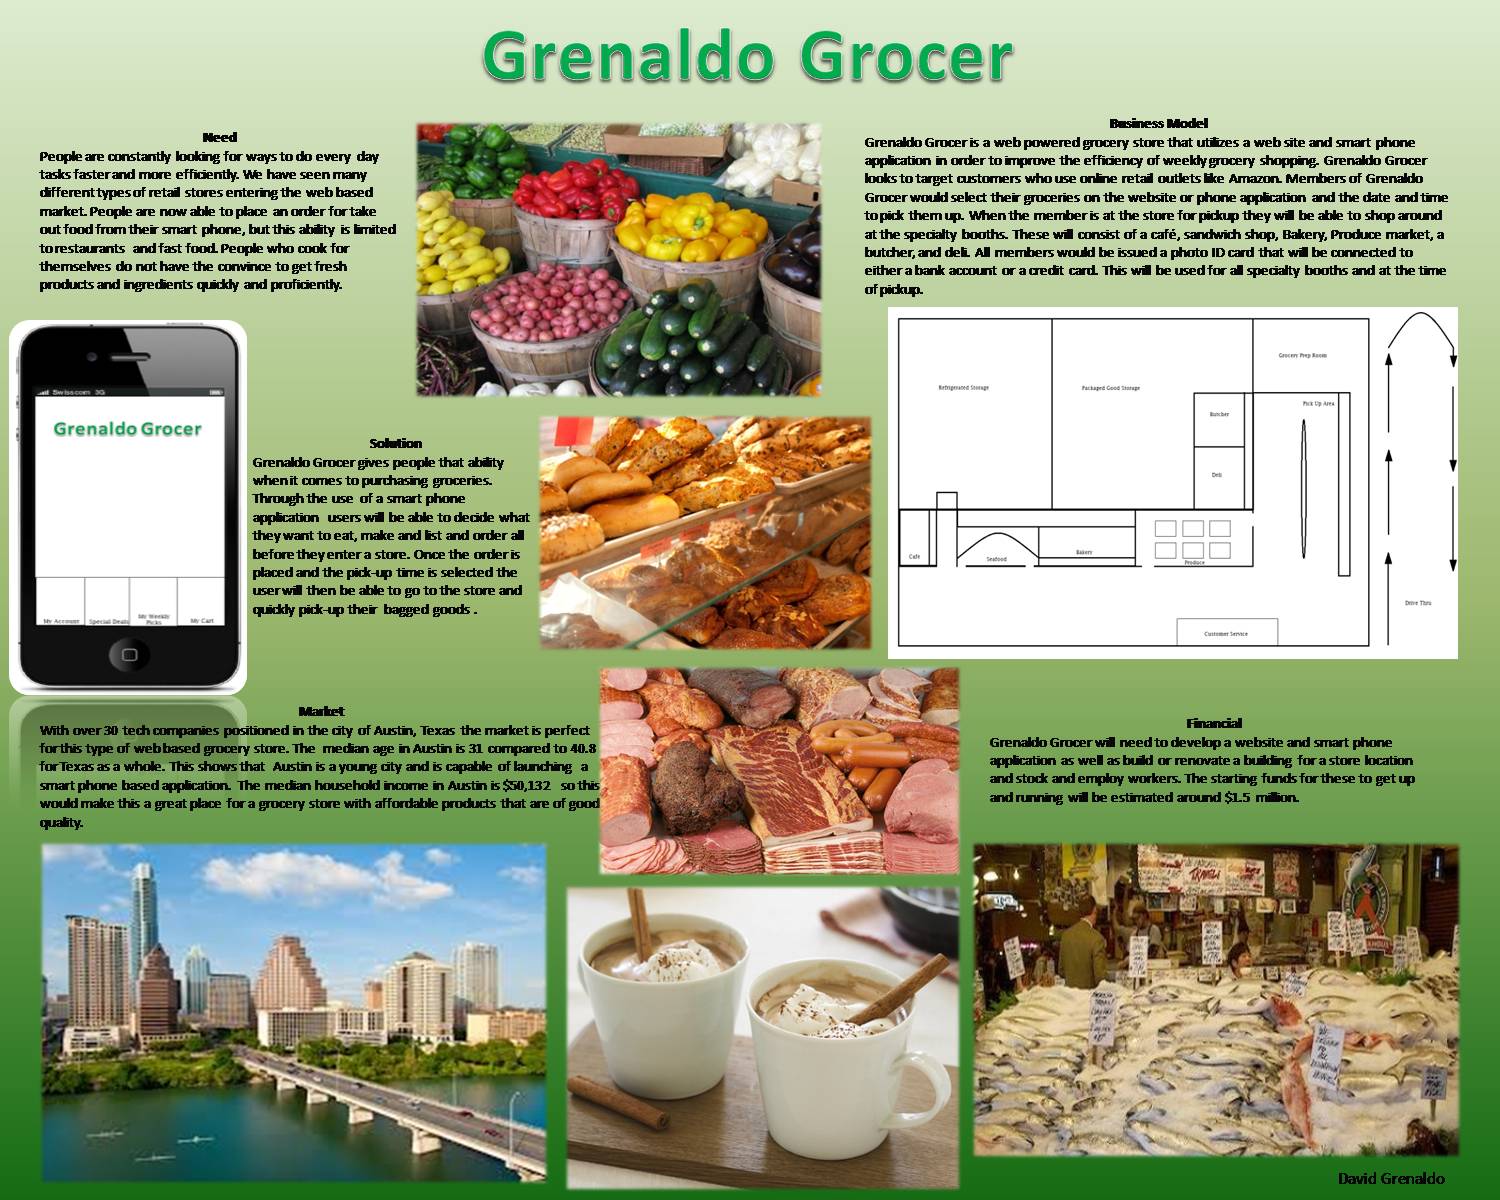 Grenaldo Grocer by Dpm25